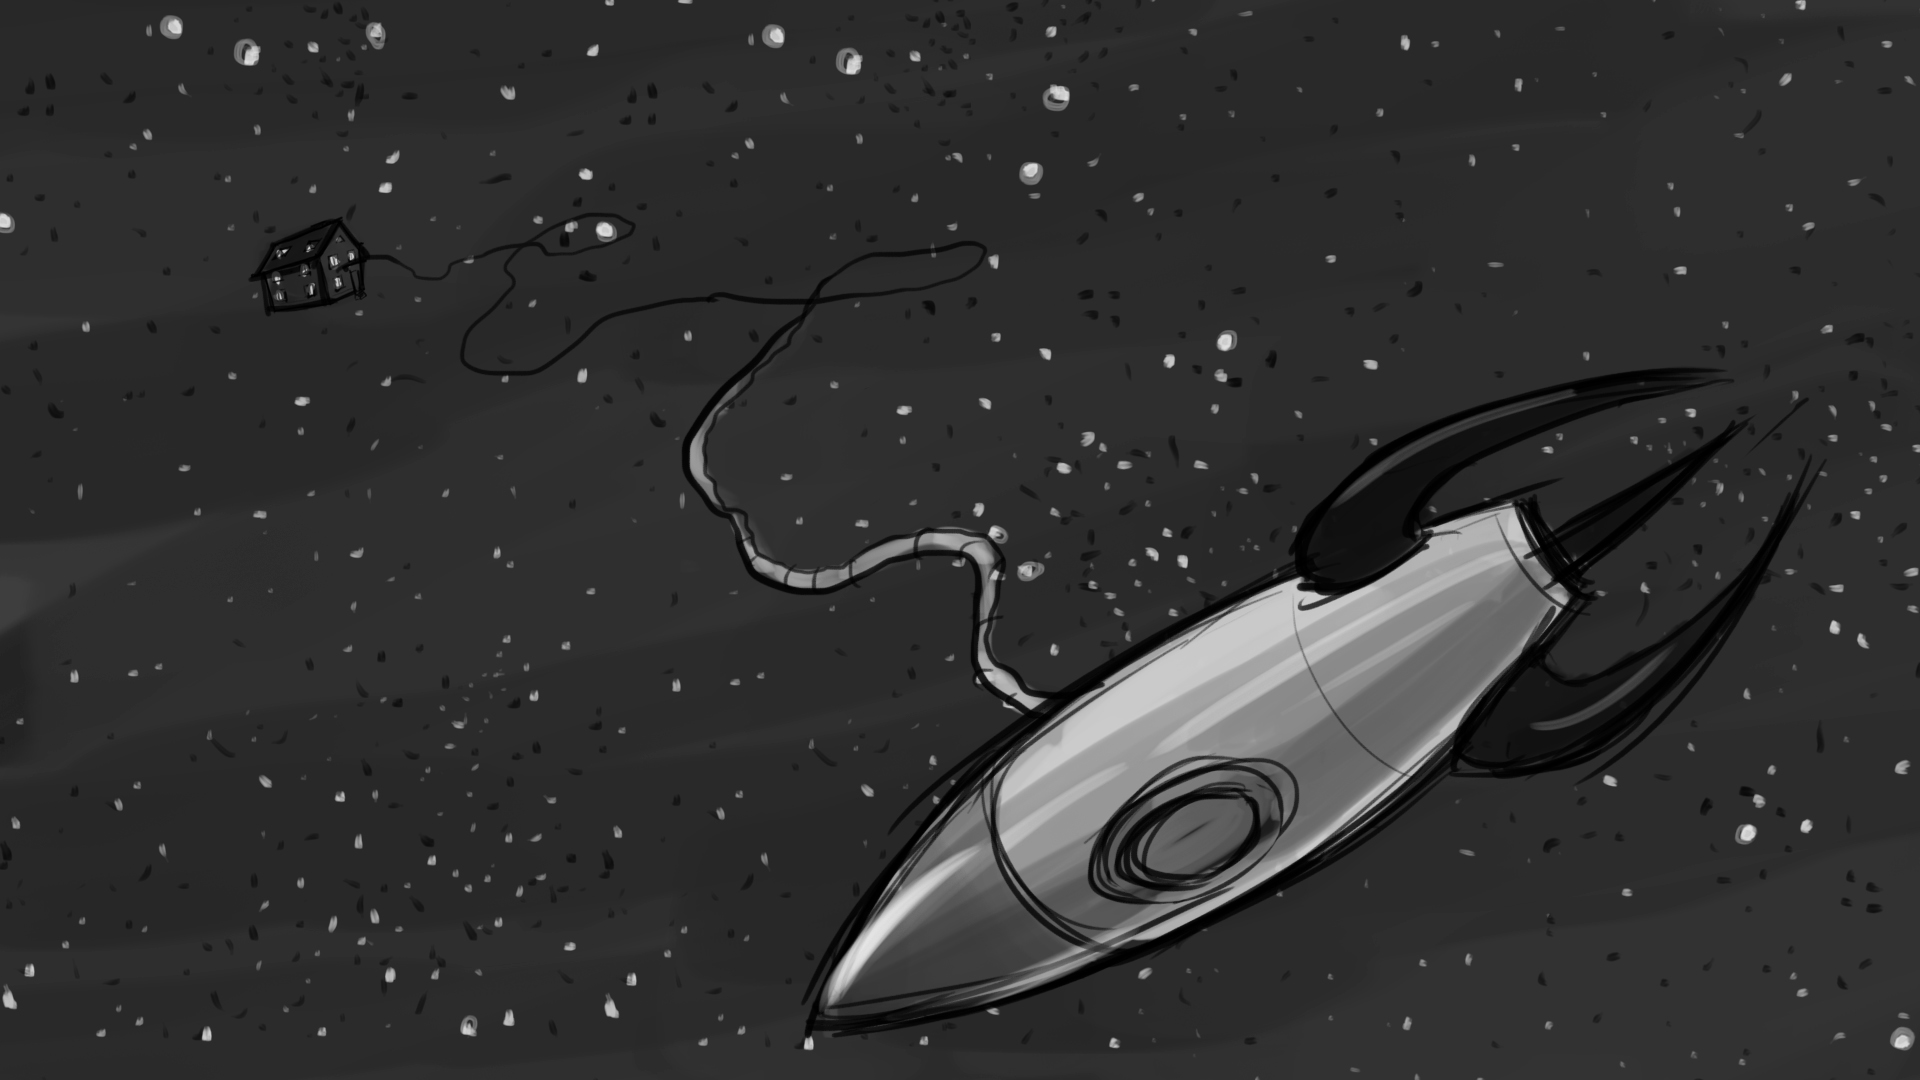 Rocket_Man_Storyboard_Artboard 43.jpg